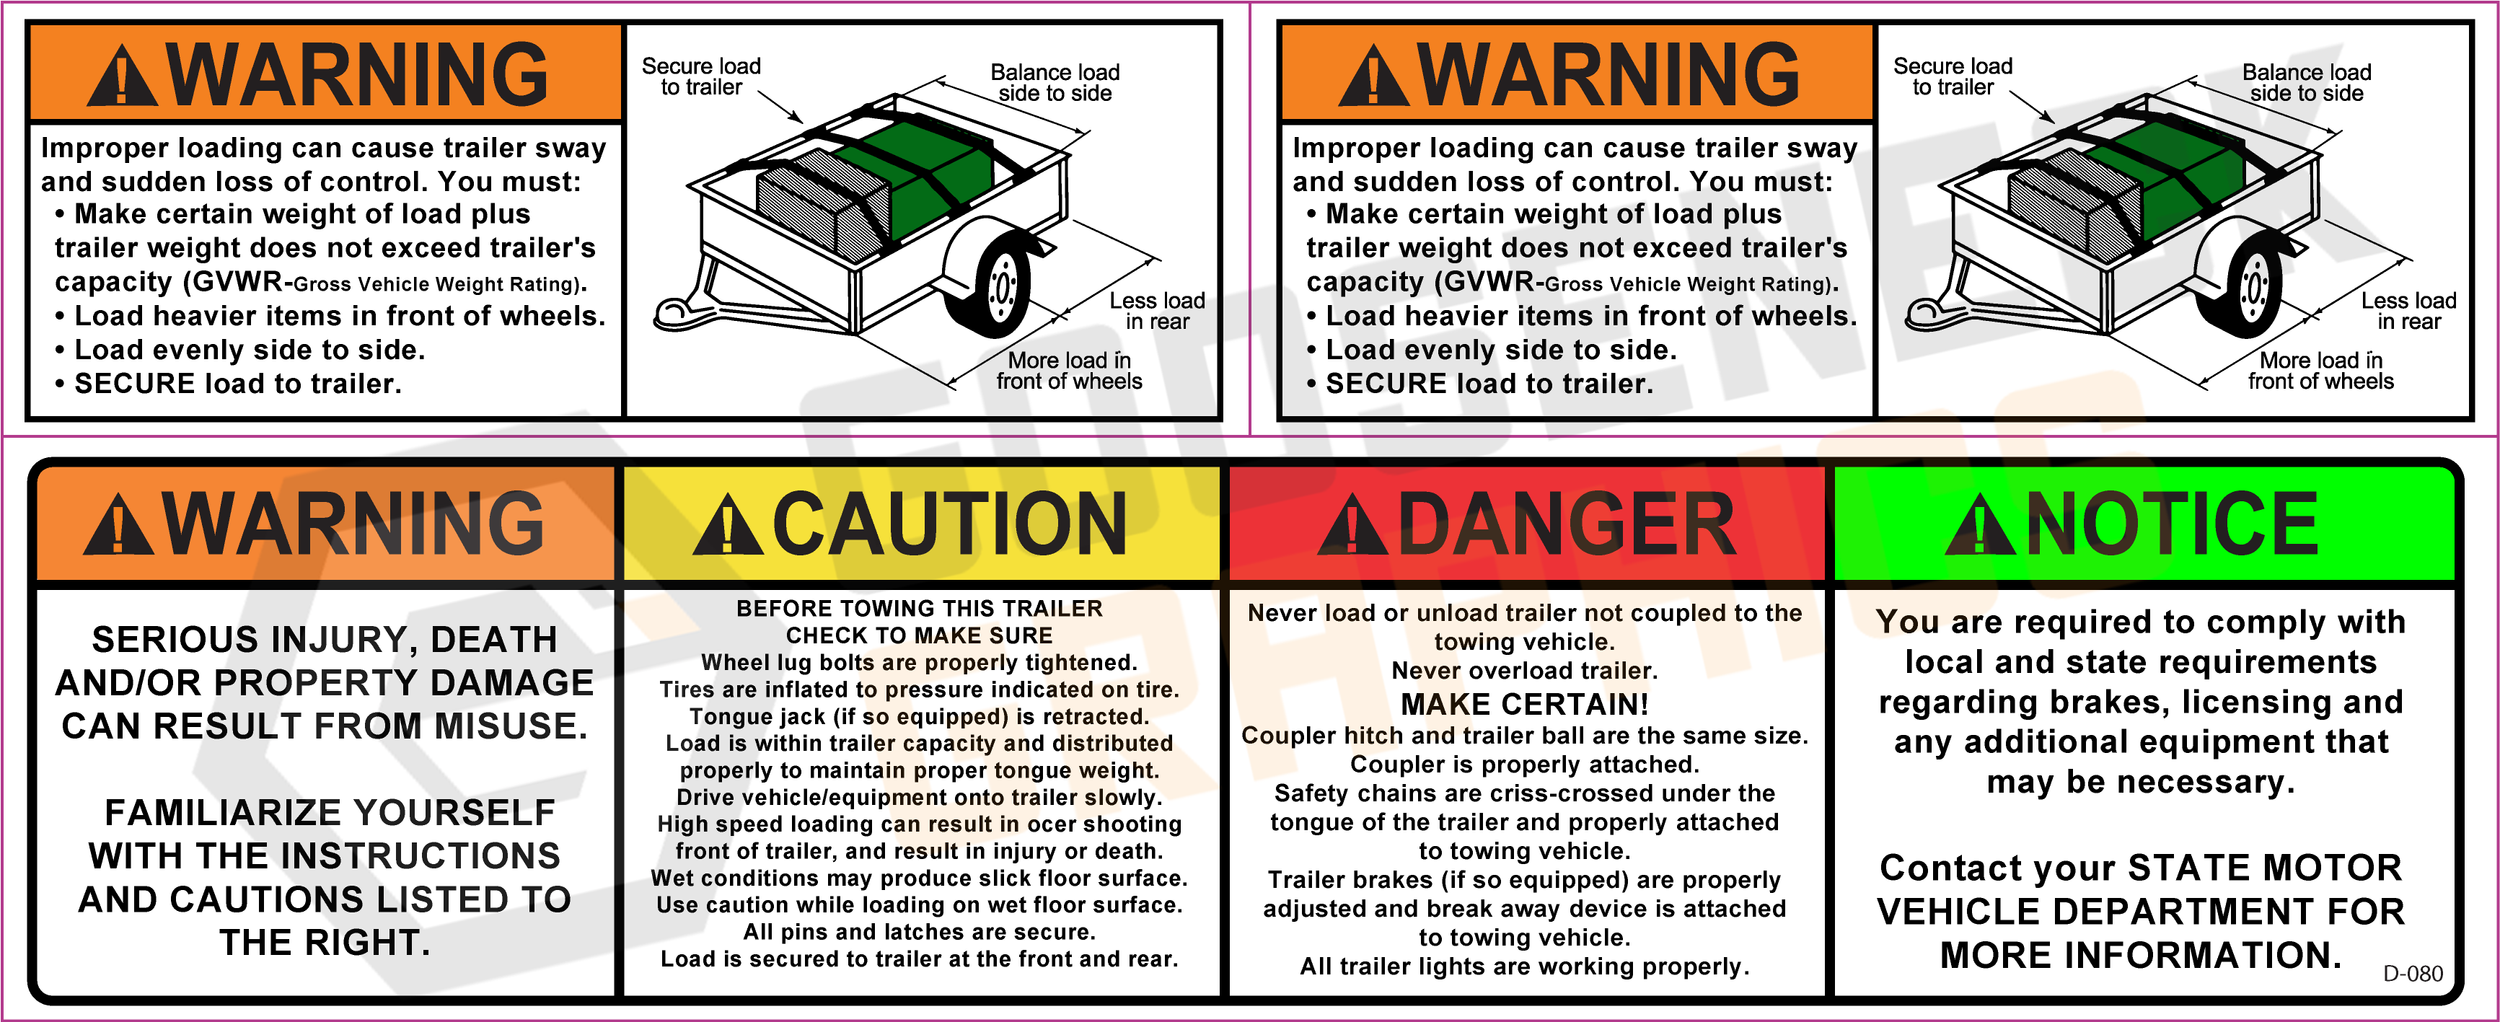 D-080 Warning Kit